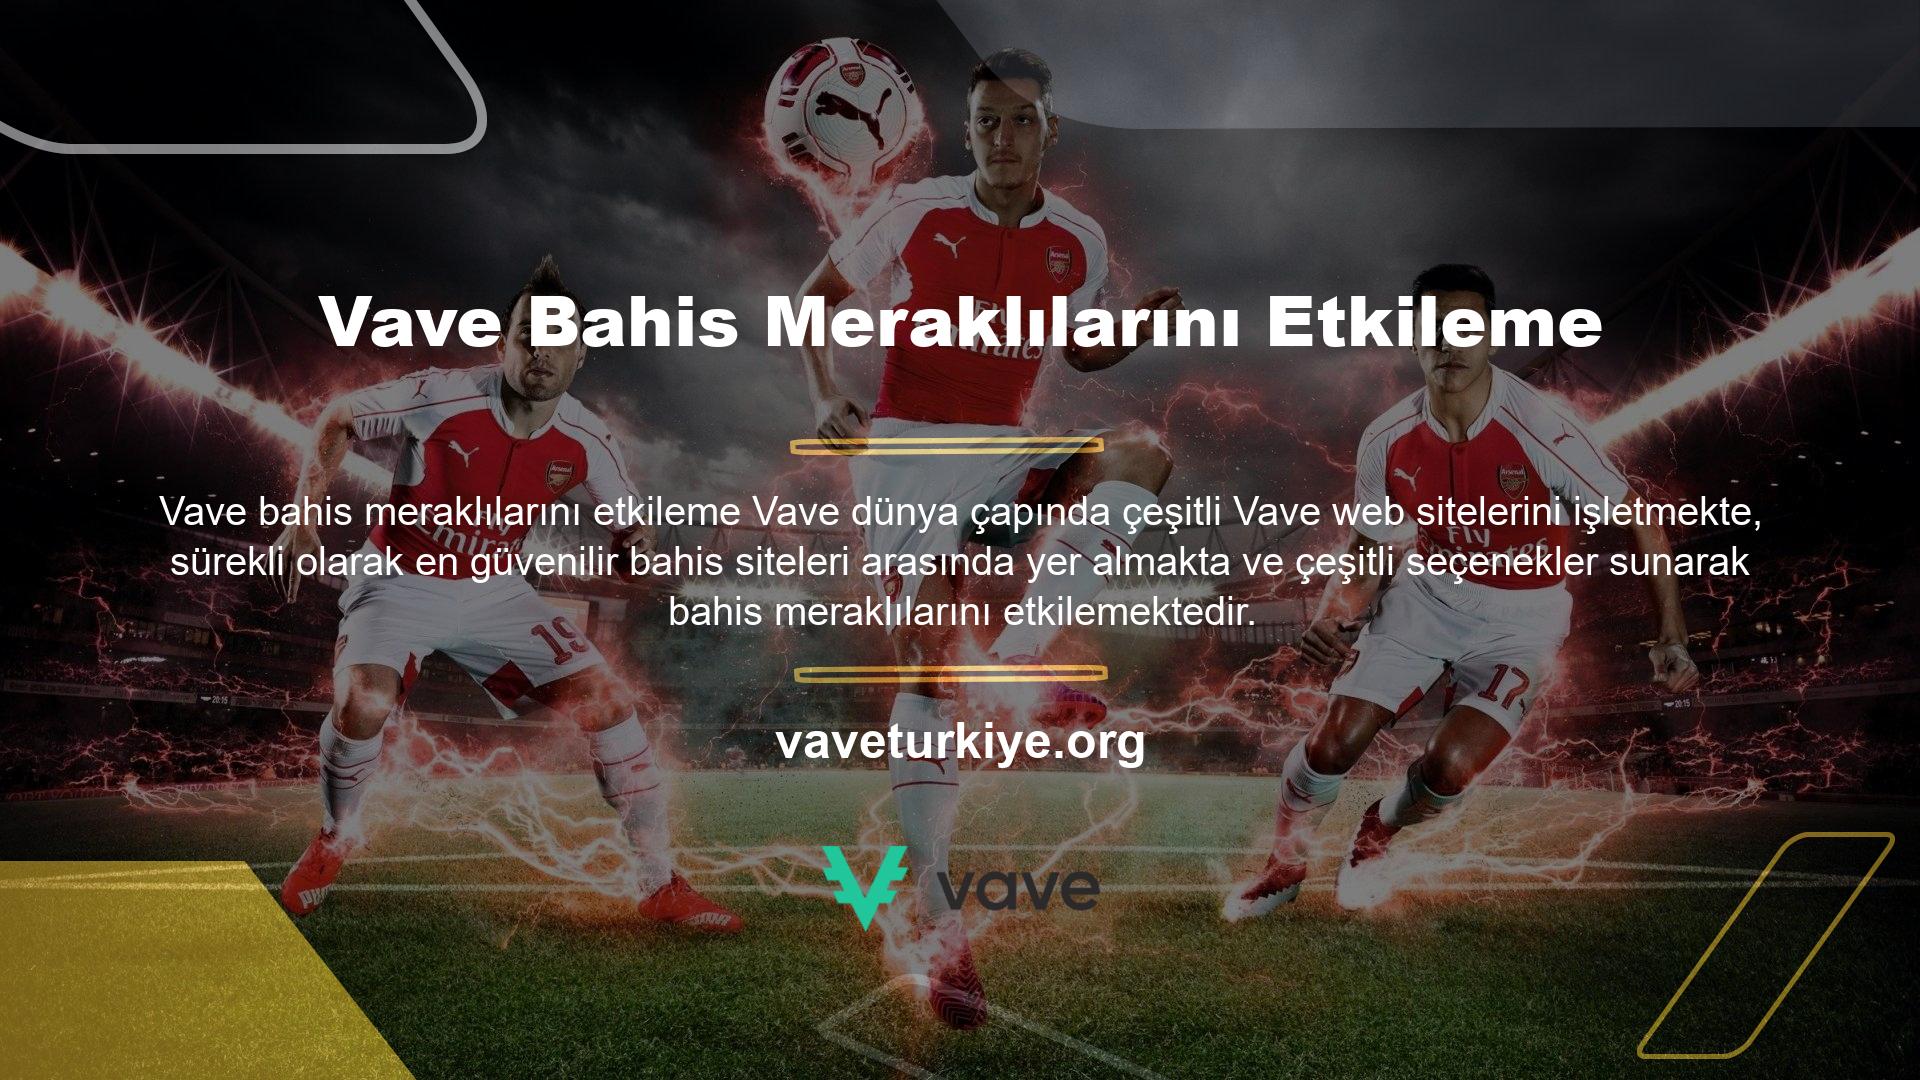 Maçın dünyada ve Türkiye'de ilk kez canlı olarak yayınlanmasıyla kullanıcılar, maçı anında izleyebilecek ve bahis oynayabilecek